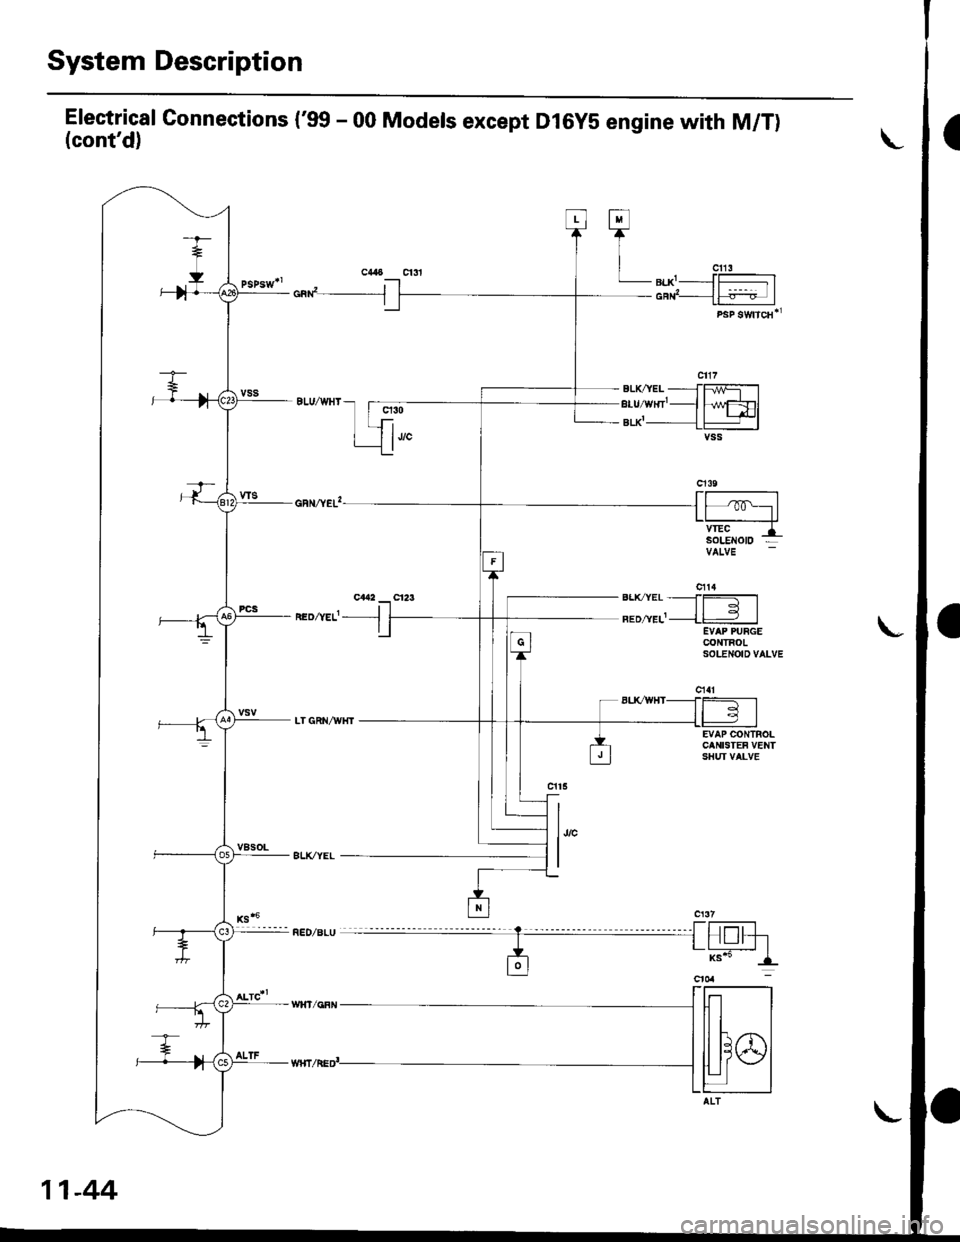 HONDA CIVIC 1999 6.G Owners Guide System Description
Electrical Gonnections (99 - 00 Models except Dl6yS engine with M/T)(contd)
cad__J
neozvef- -l
q30
1""
h/wFDlt+l-lvss
EVAP CONTROLCANISTEF VENTSHUI VALVE
l,,"
I
Fl
TI
| "u,LB|.X-